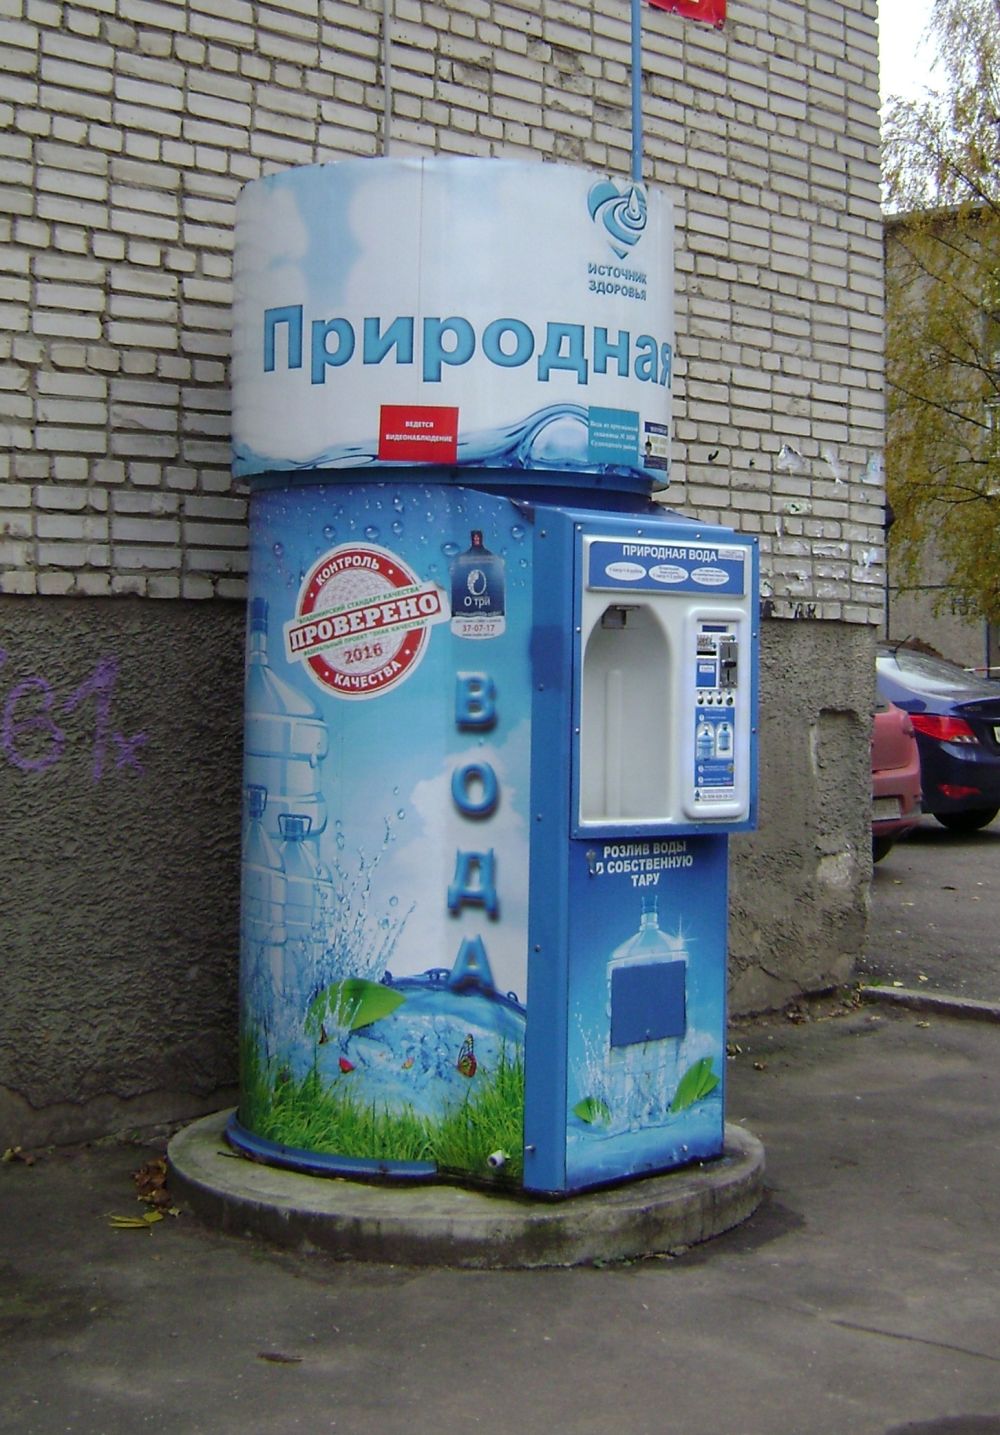 Продажа воды на дом. Автомат питьевой воды. Автомат с водой. Вендинговый автомат с водой. Уличный автомат с водой.